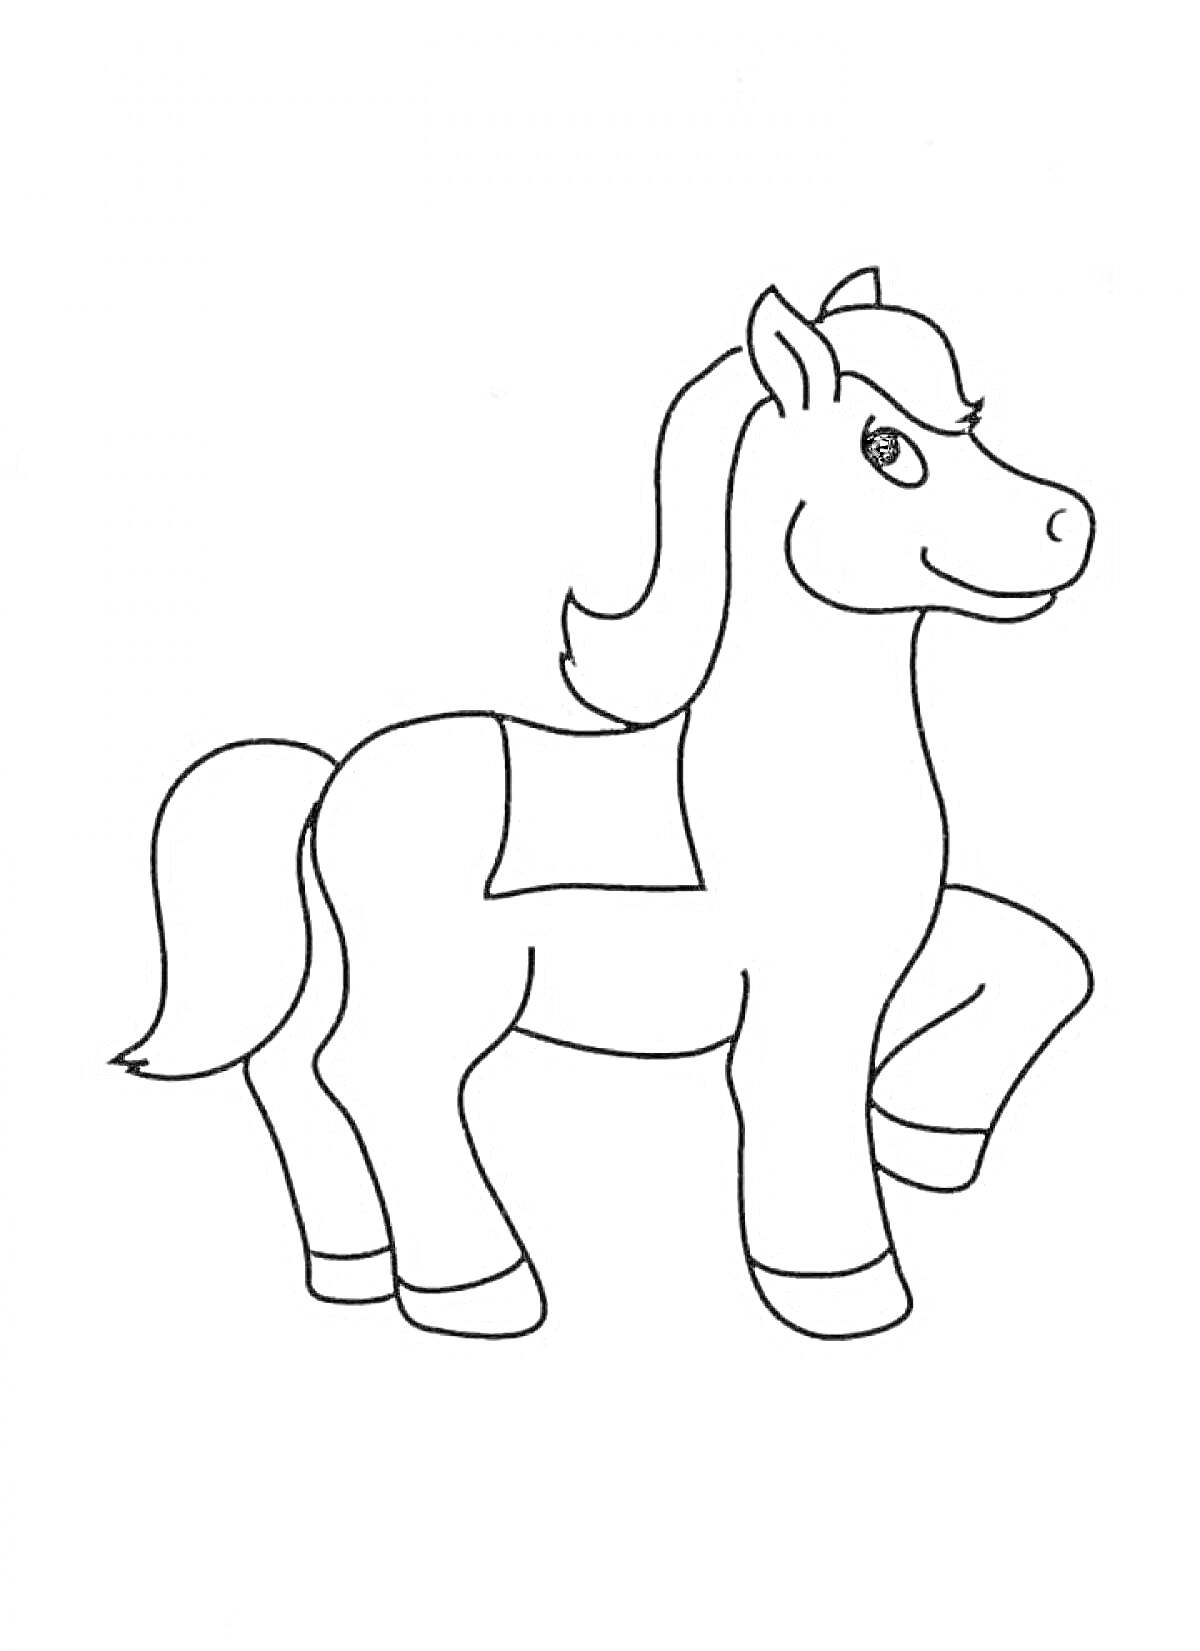 Раскраска Лошадь в движении с поднятой передней ногой